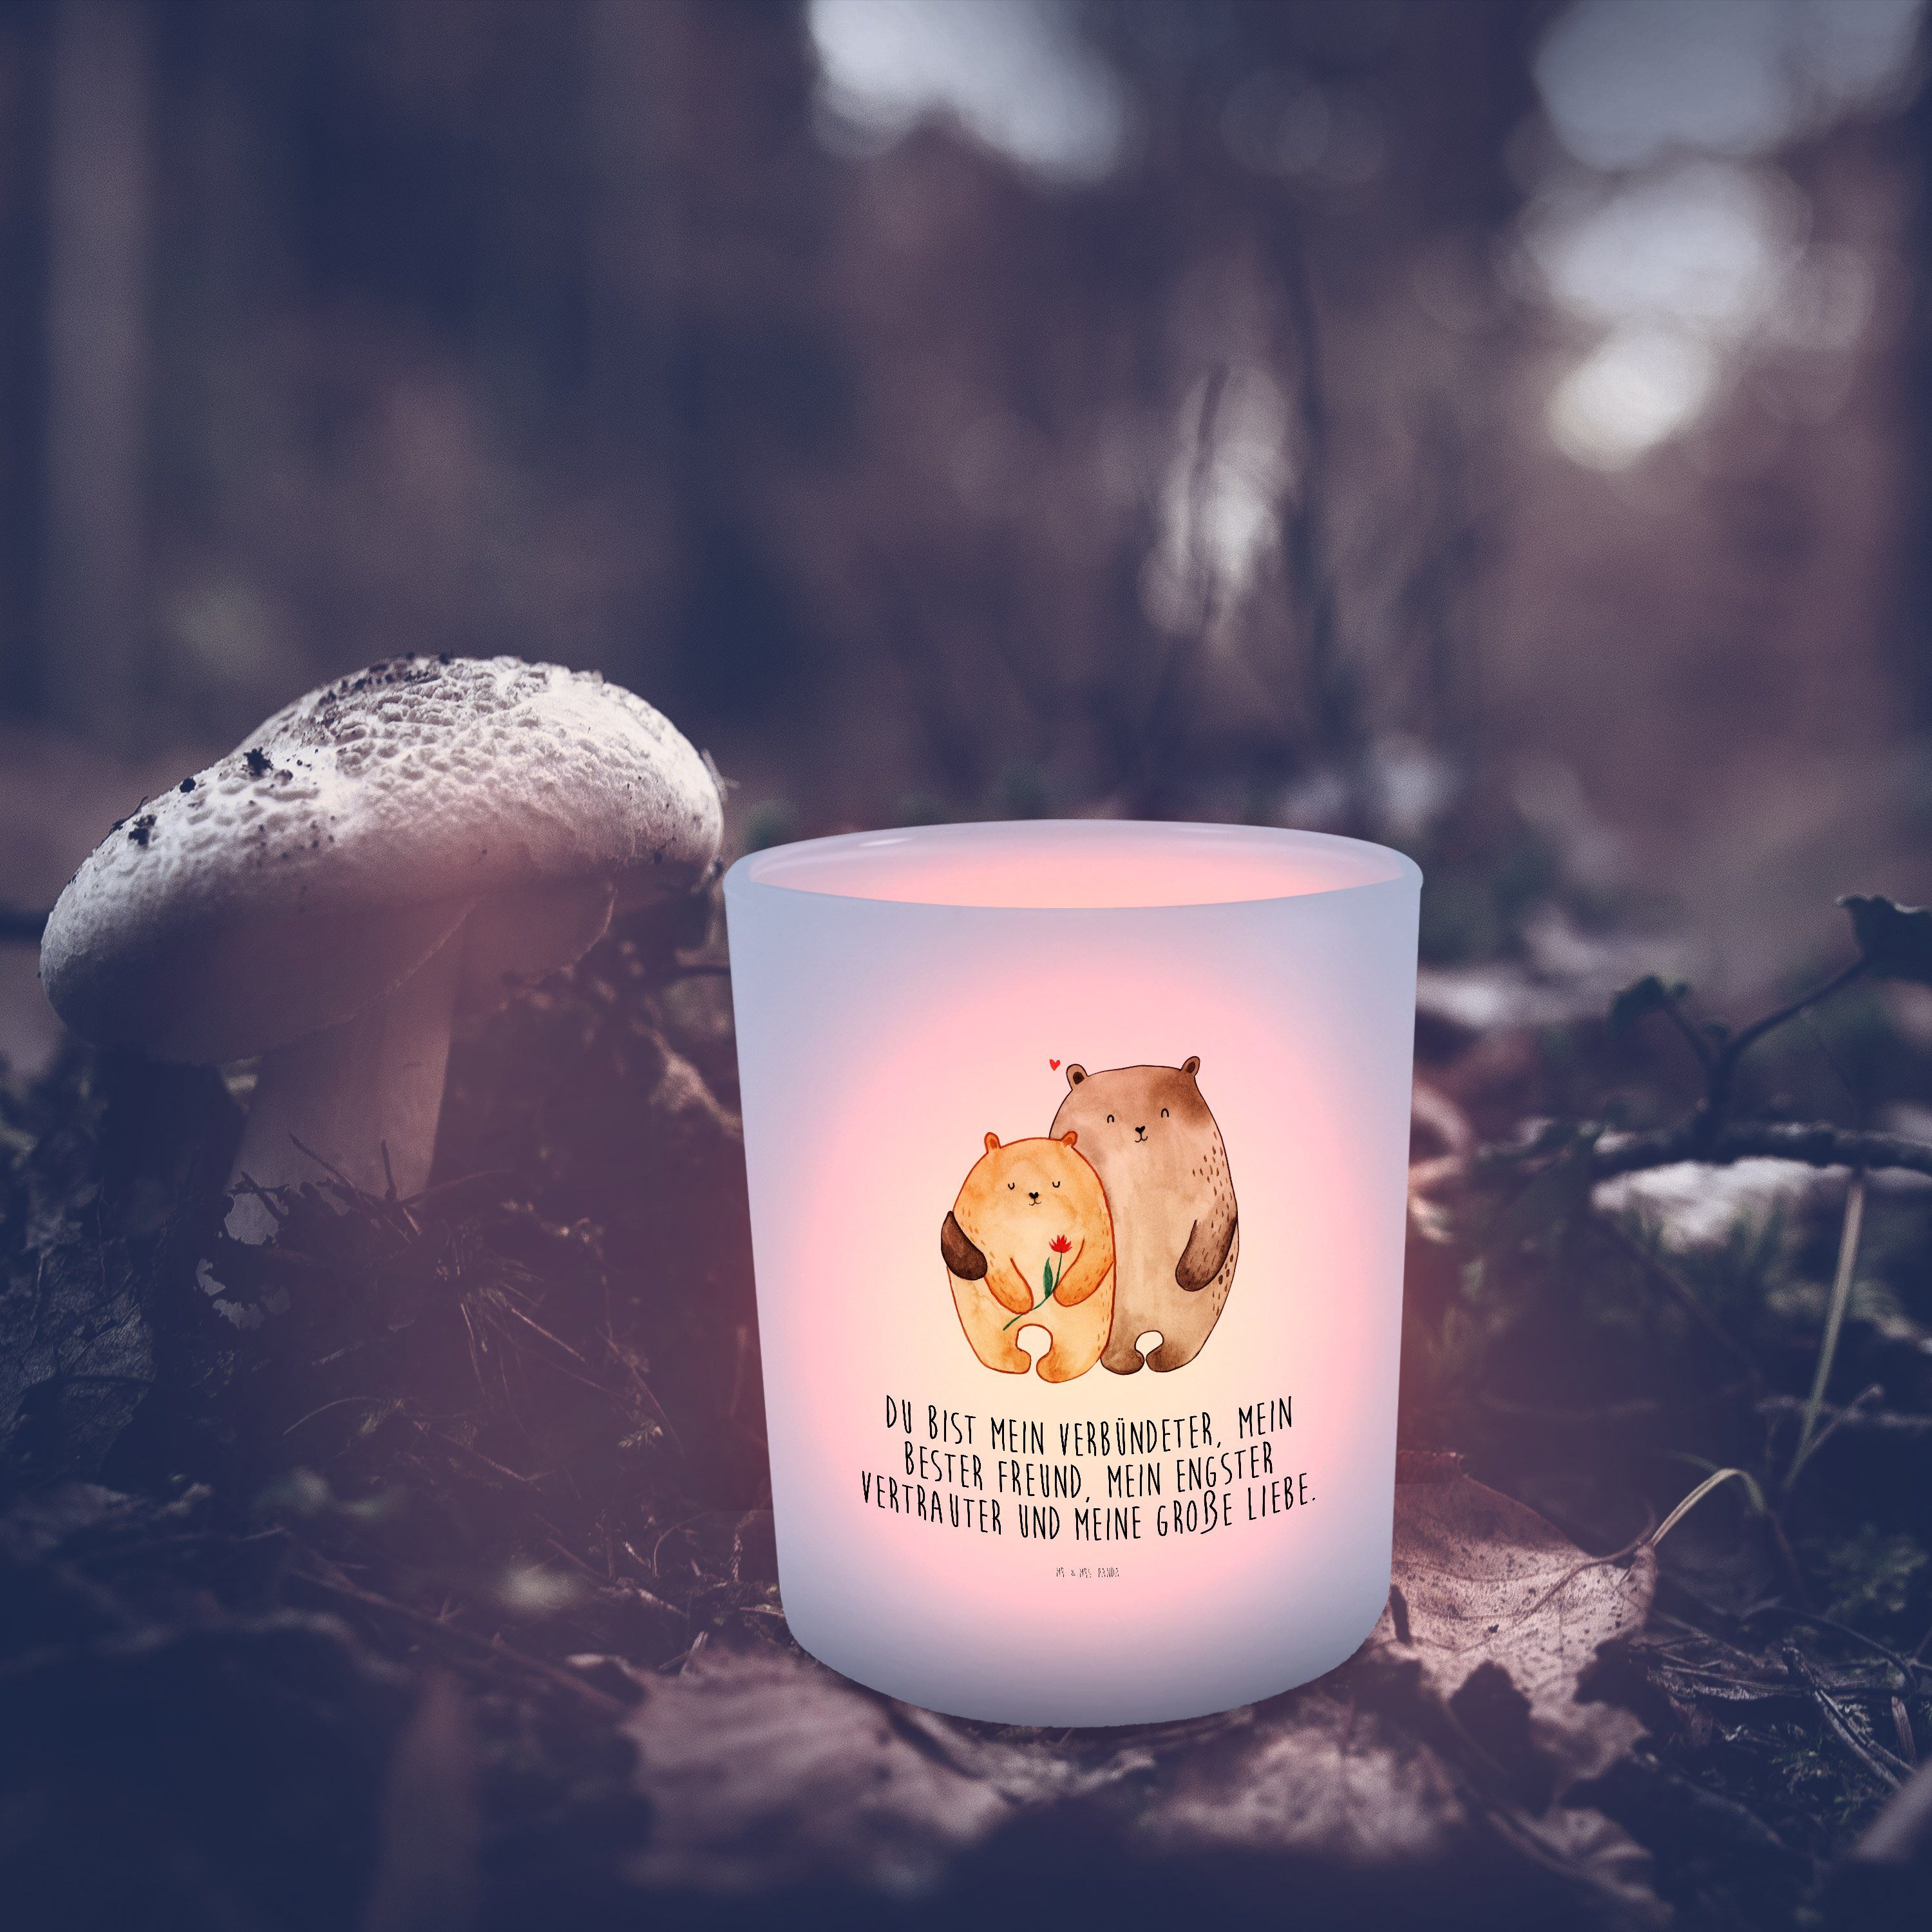 Mr. & Mrs. Panda Windlicht Bären Liebe - Transparent - Geschenk, Teelichter, Windlicht Kerze, ve (1 St)